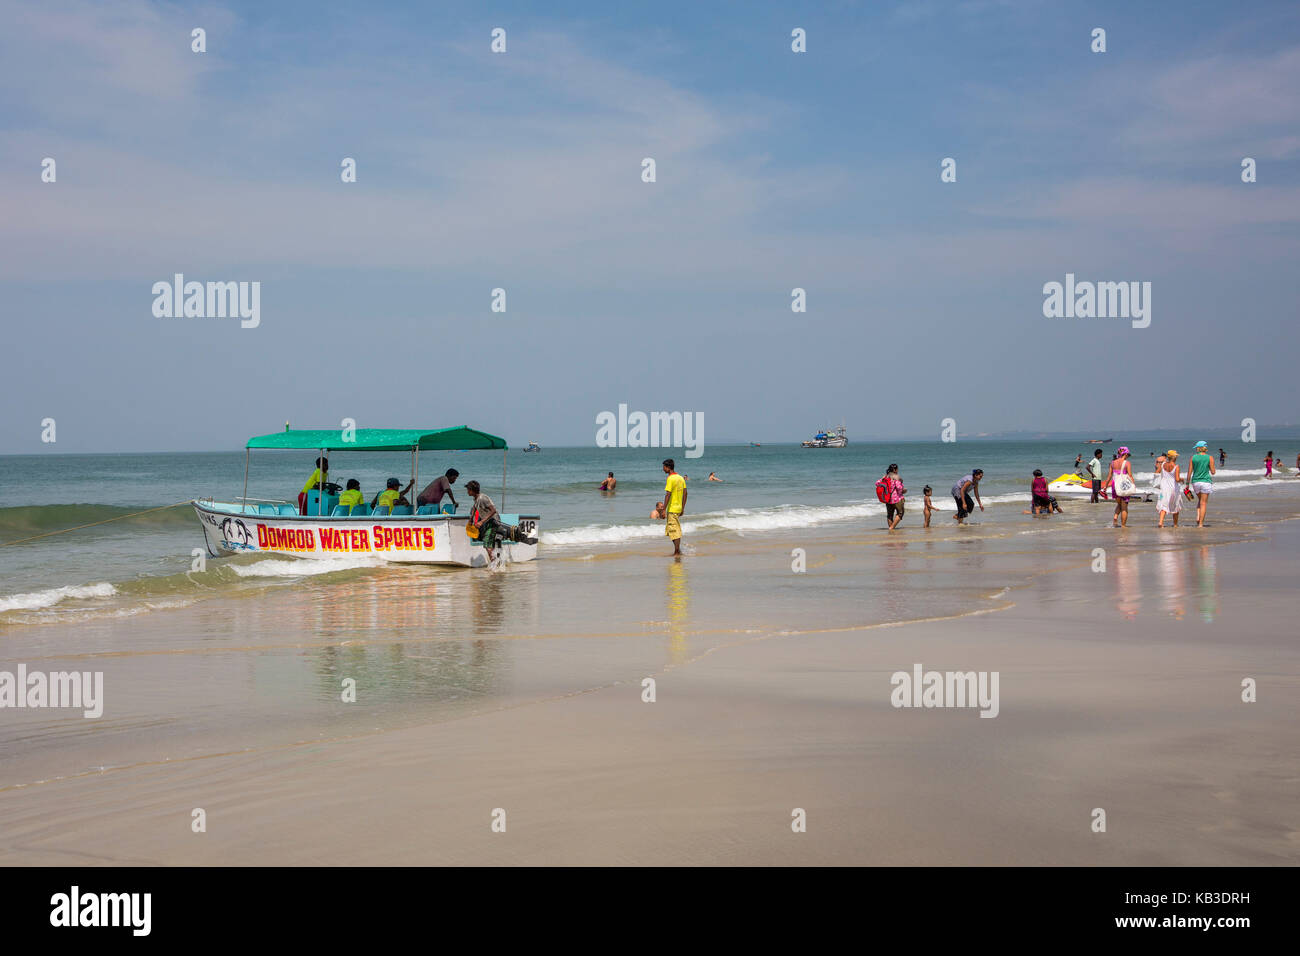 L'Inde, Goa, plage de colva auprès des touristes Banque D'Images